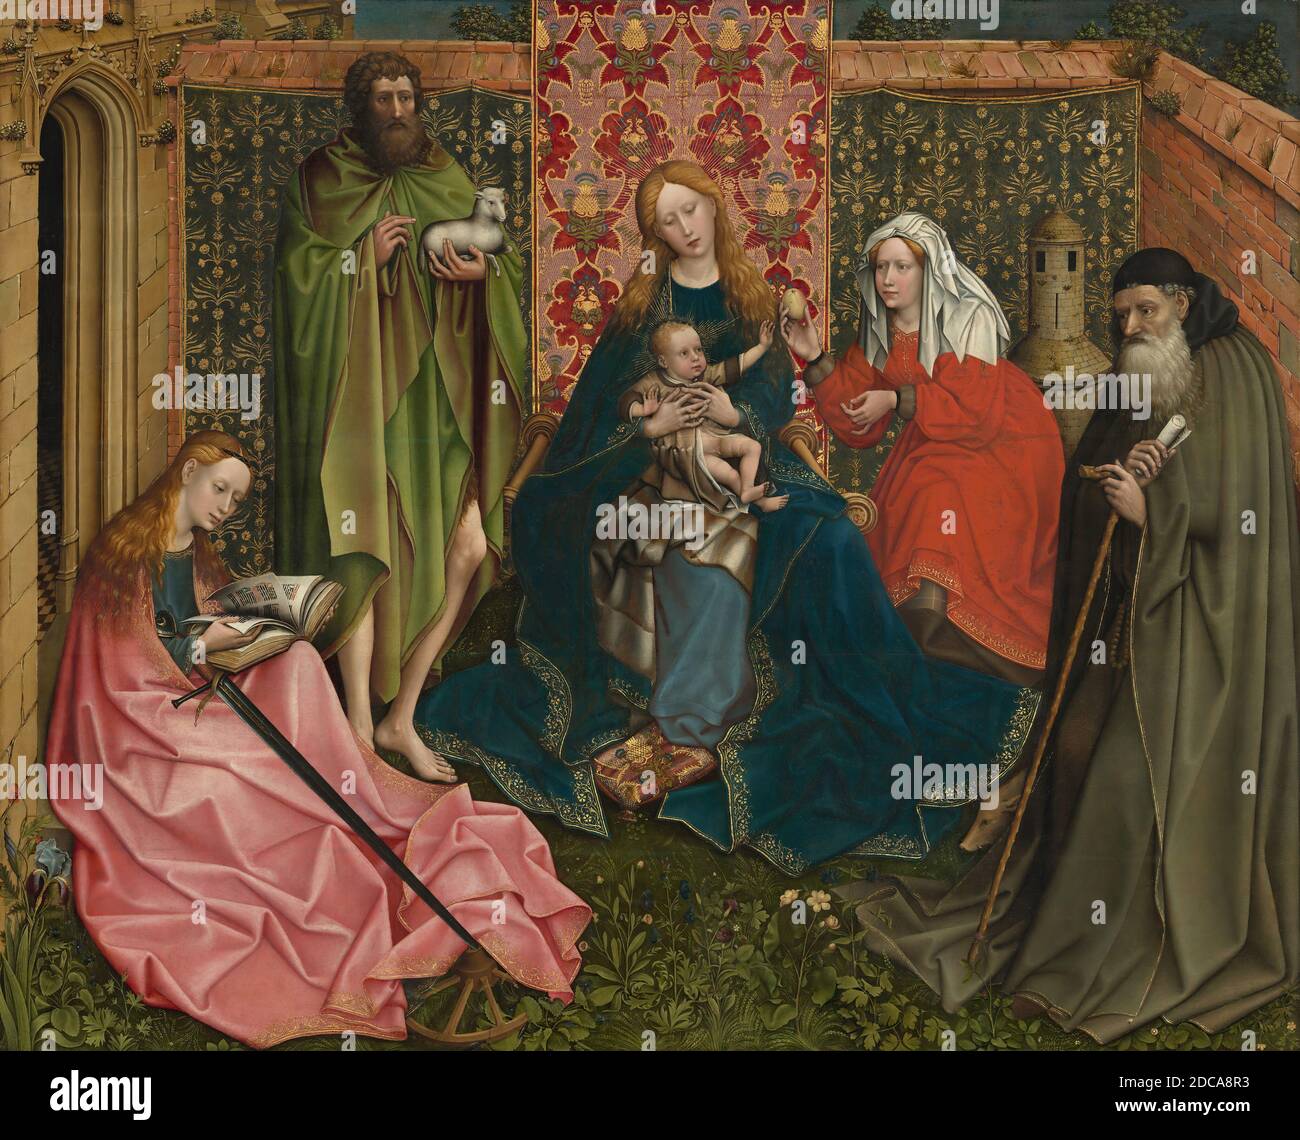 Artiste anonyme, (peintre), Robert Campin, (artiste apparenté), Netherlandish, c. 1375 - 1444, Madonna et l'enfant avec les saints dans le jardin clos, c. 1440/1460, huile sur panneau, surface peinte : 119.8 x 148.5 cm (47 3/16 x 58 7/16 in.), hors tout (panneau) : 122.2 x 151.2 cm (48 1/8 x 59 1/2 in.), à cadre : 138.7 x 166.7 x 9.5 cm (54 5/8 x 65 5/8 x 3 3/4 in Banque D'Images